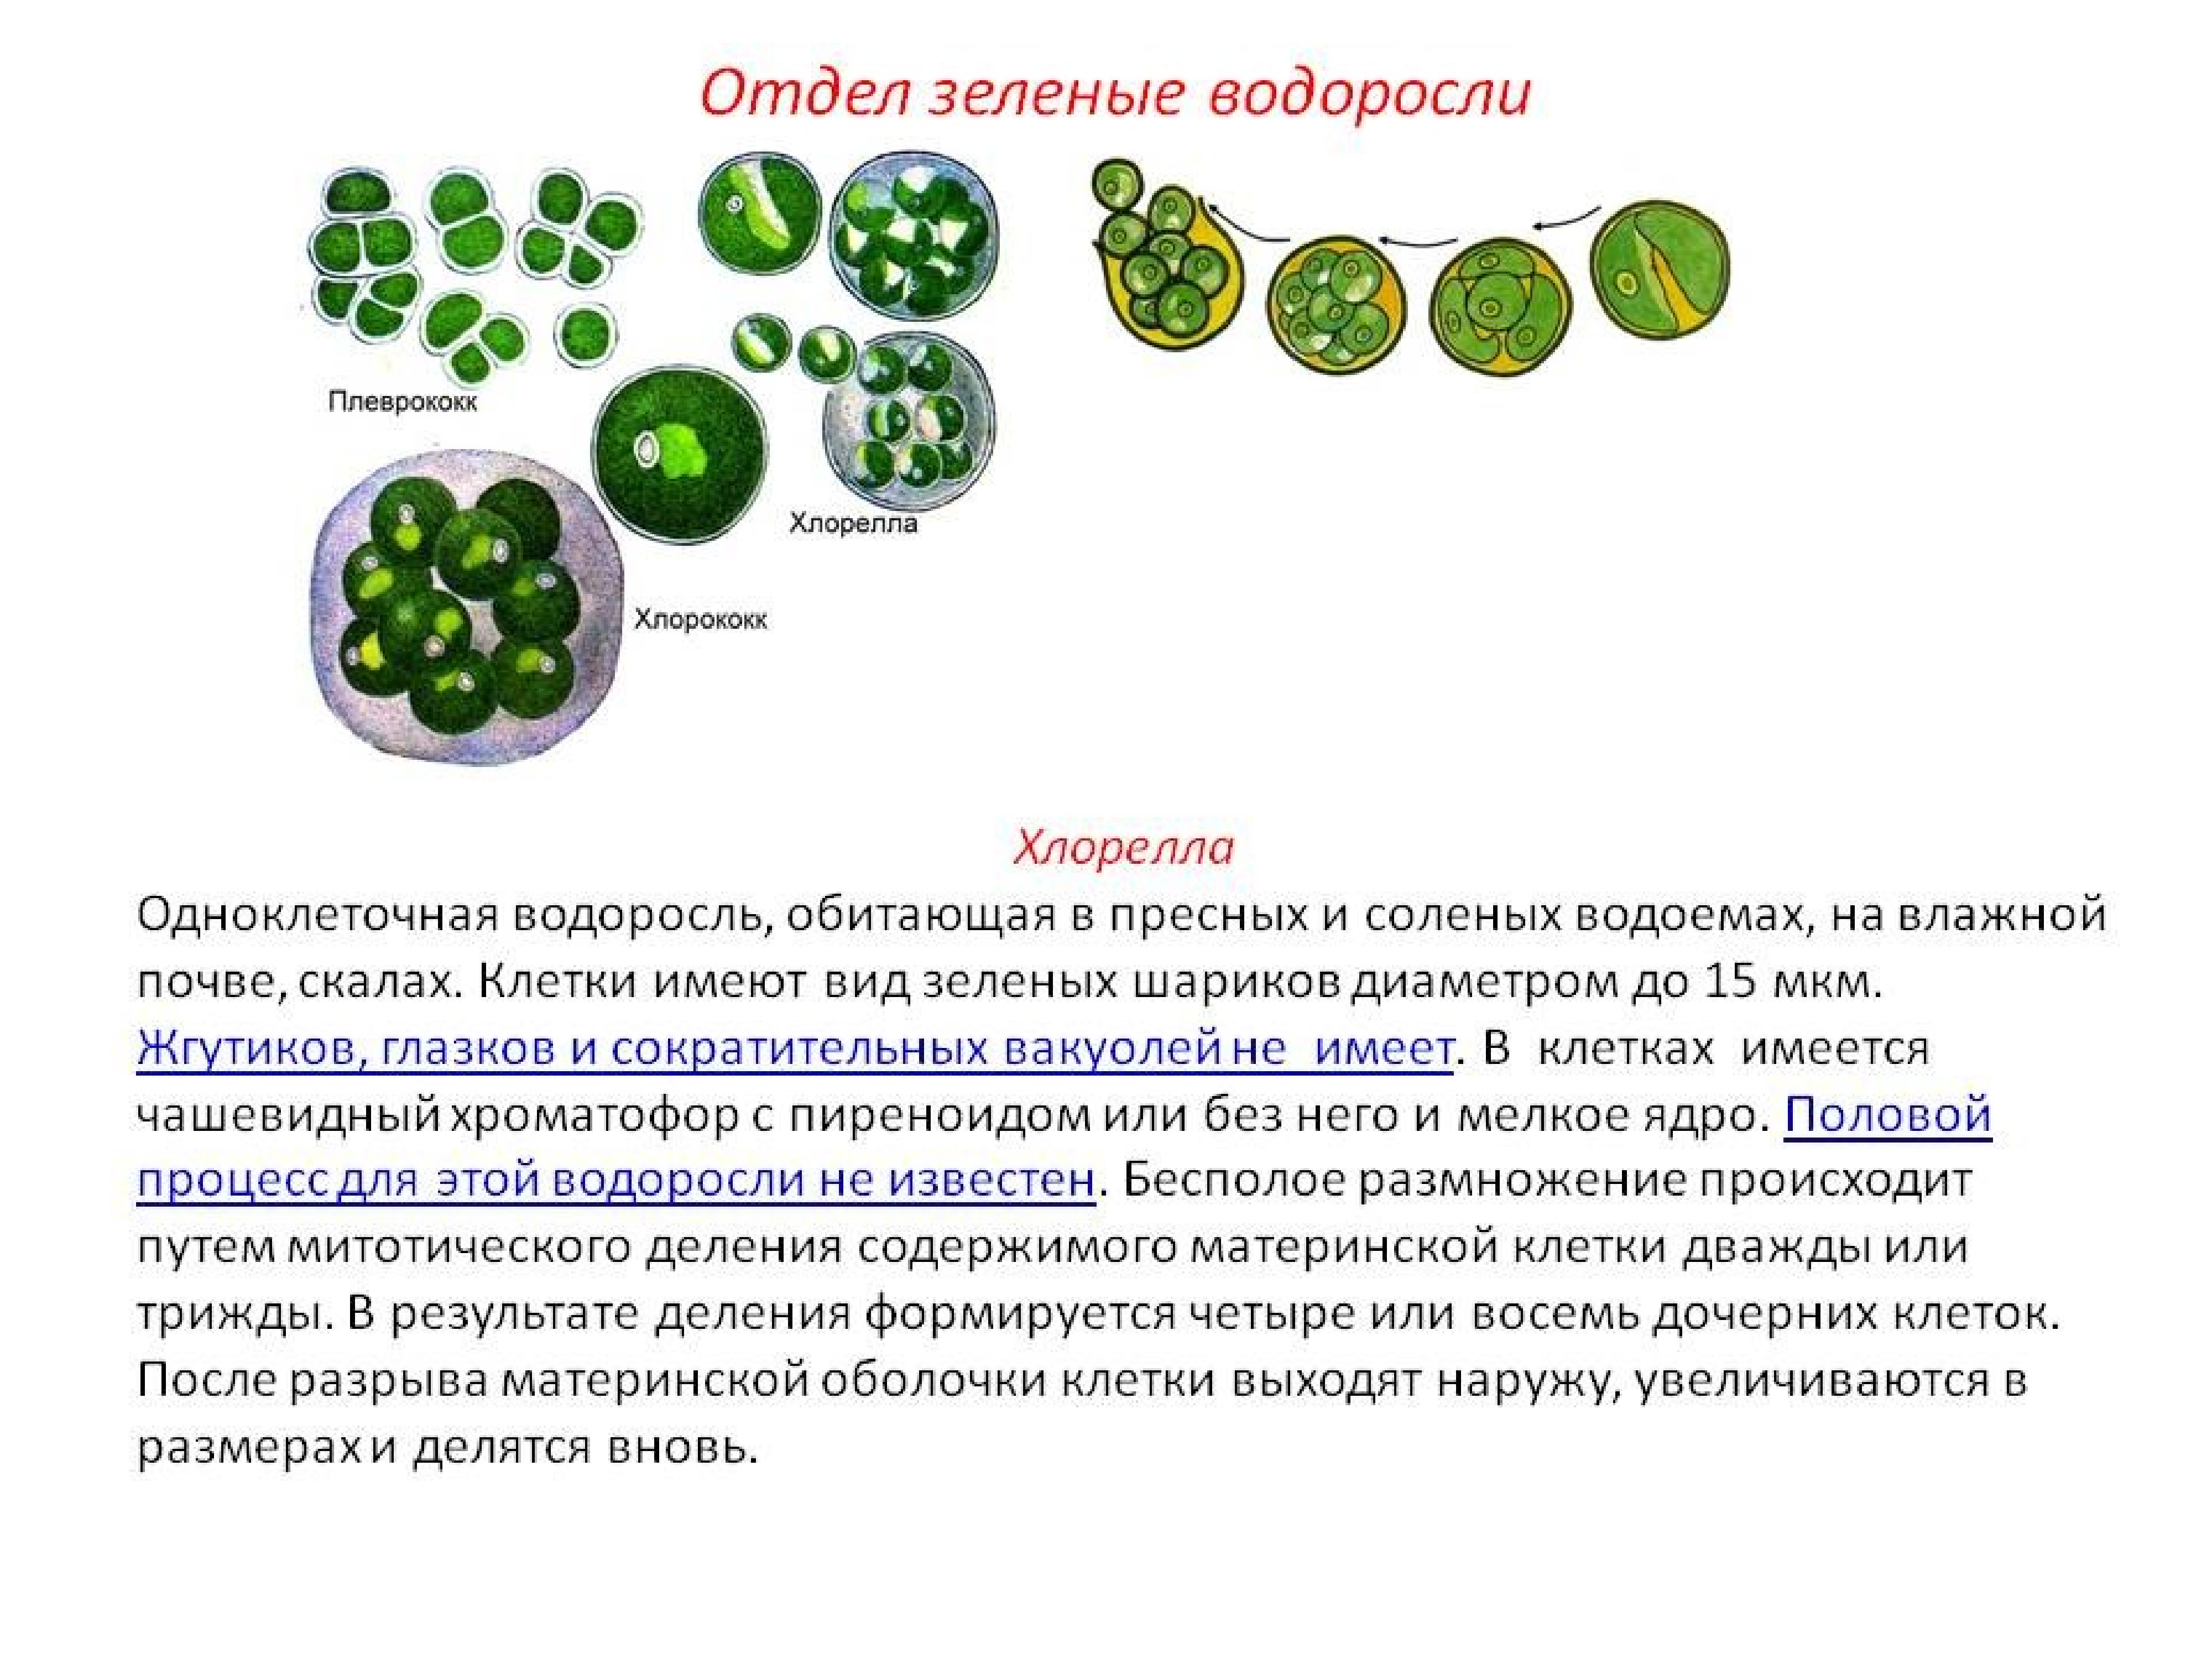 Органы одноклеточных водорослей. Зеленые водоросли хлорелла. Одноклеточные растения хлорелла. Одноклеточная водоросль хлорелла. Зеленые водоросли хлореллы строение.